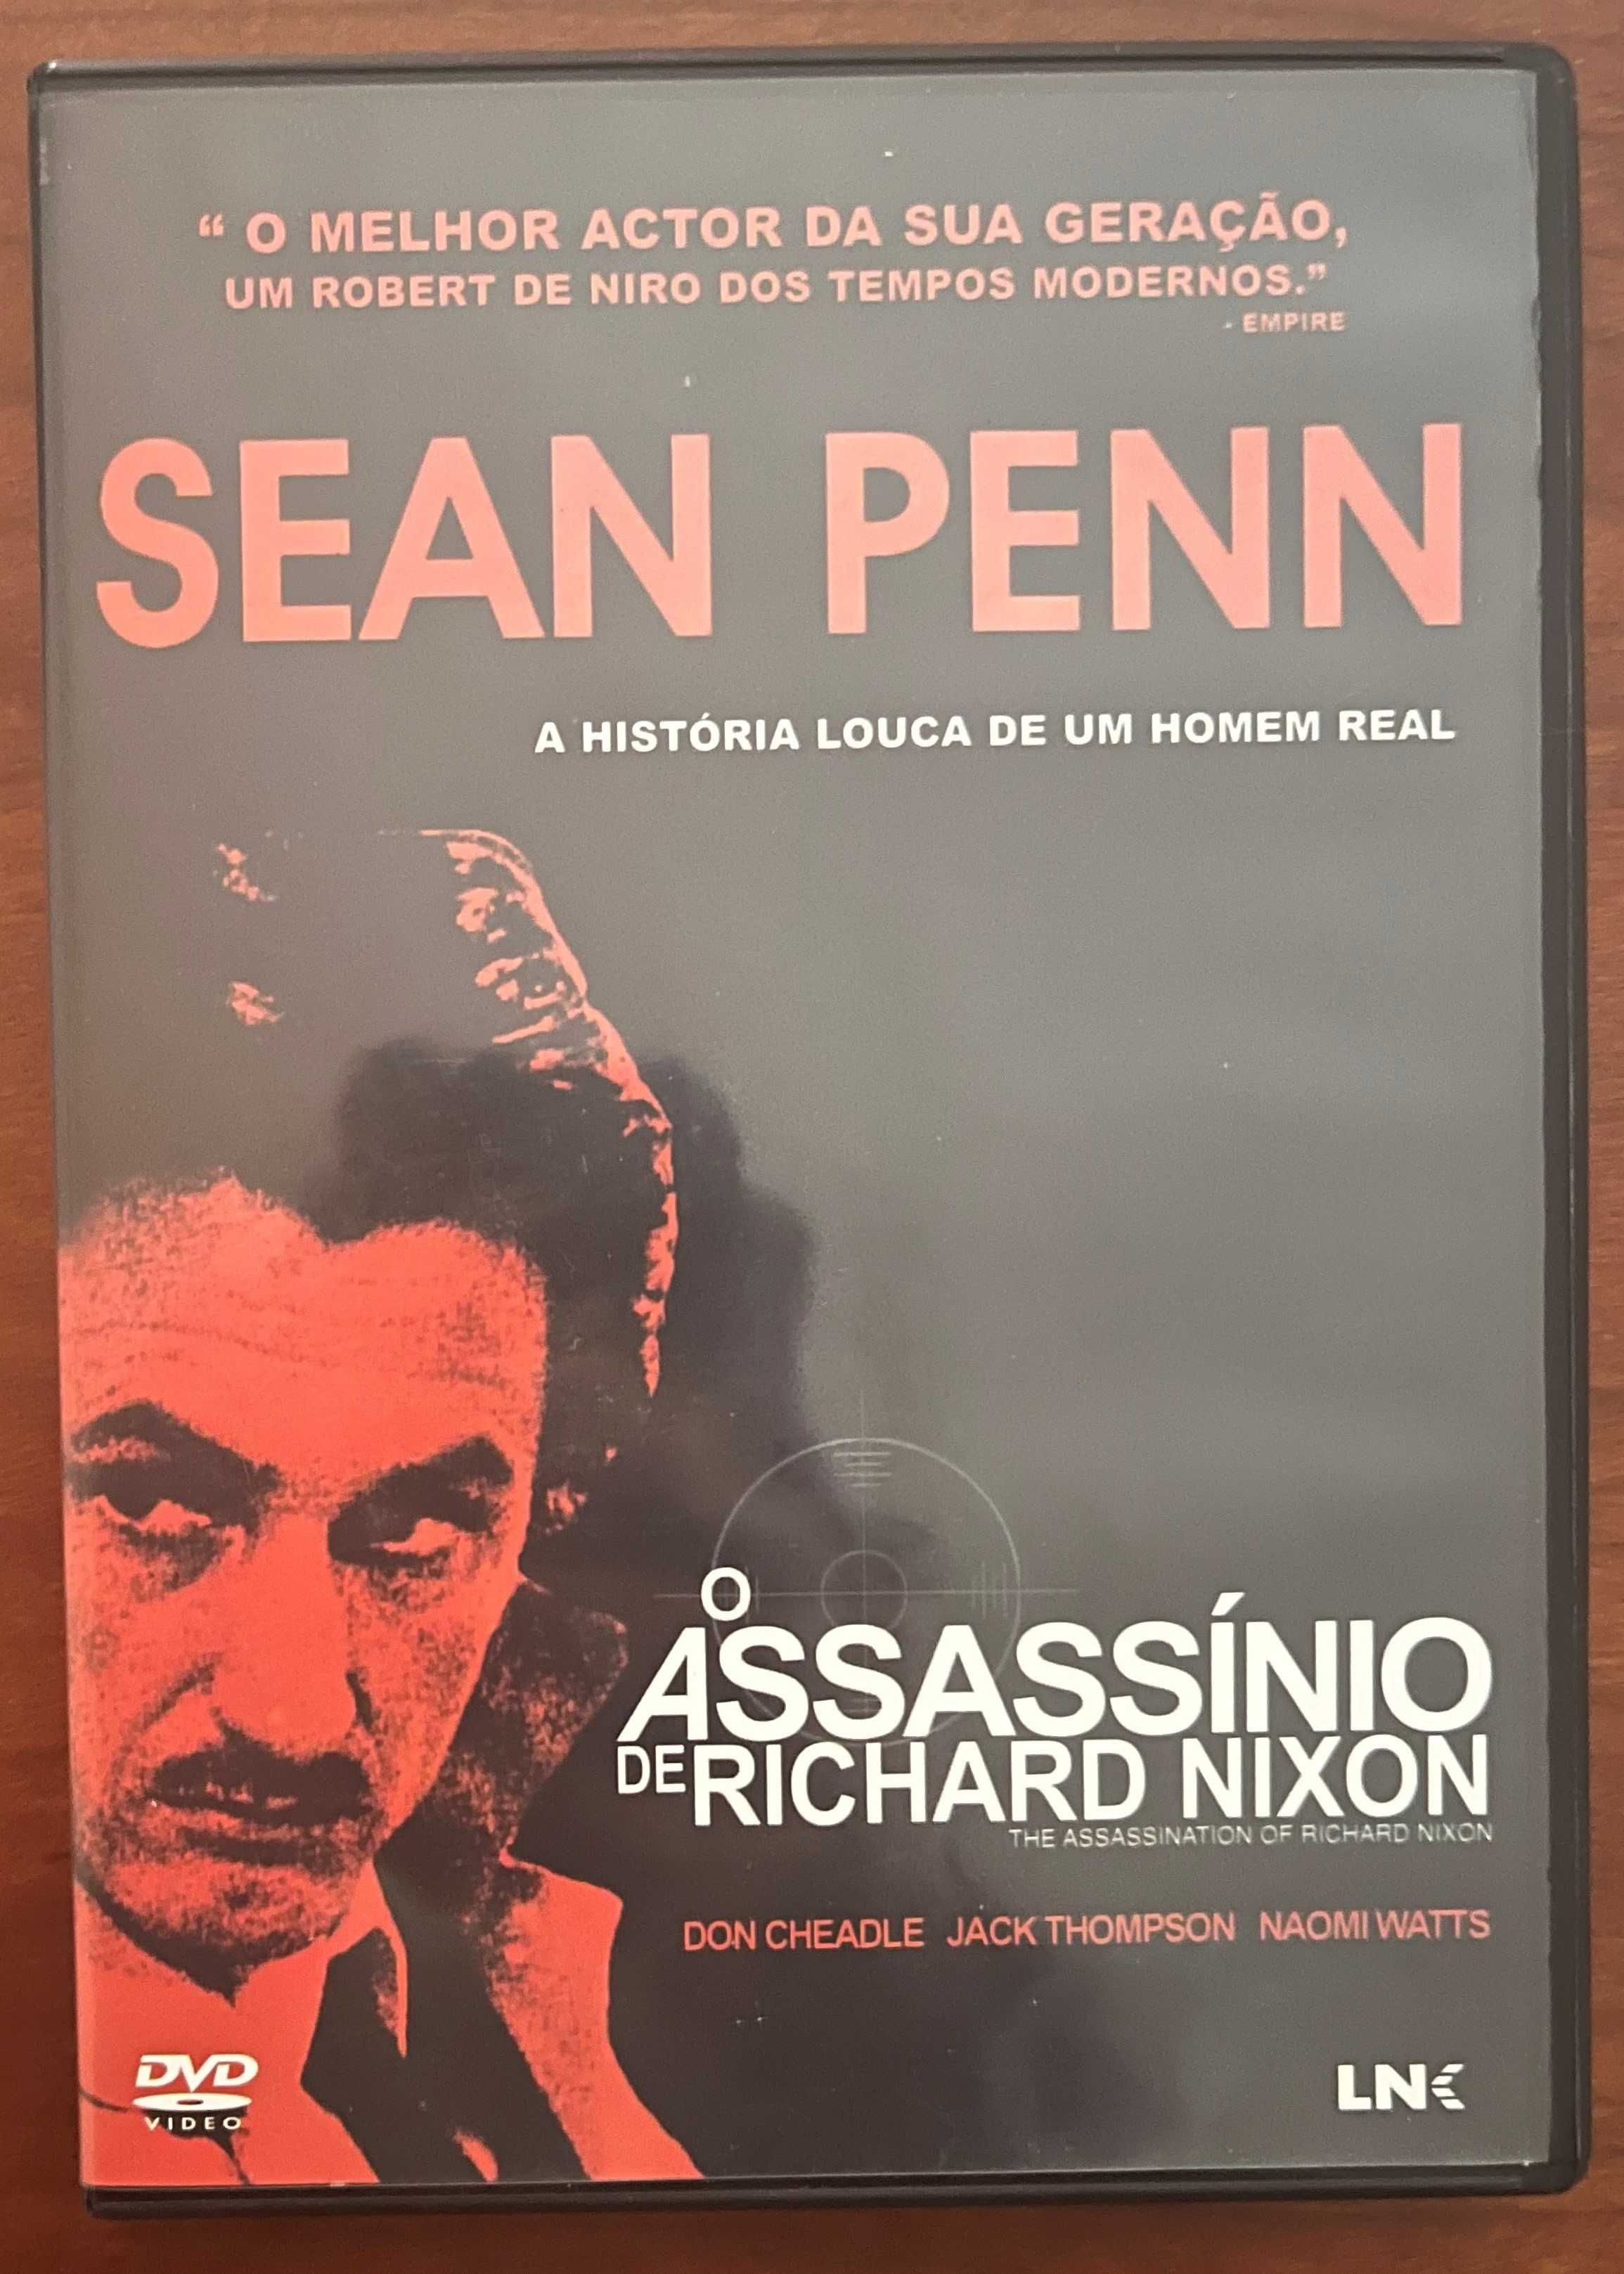 DVD "O assassínio de Richard Nixon"